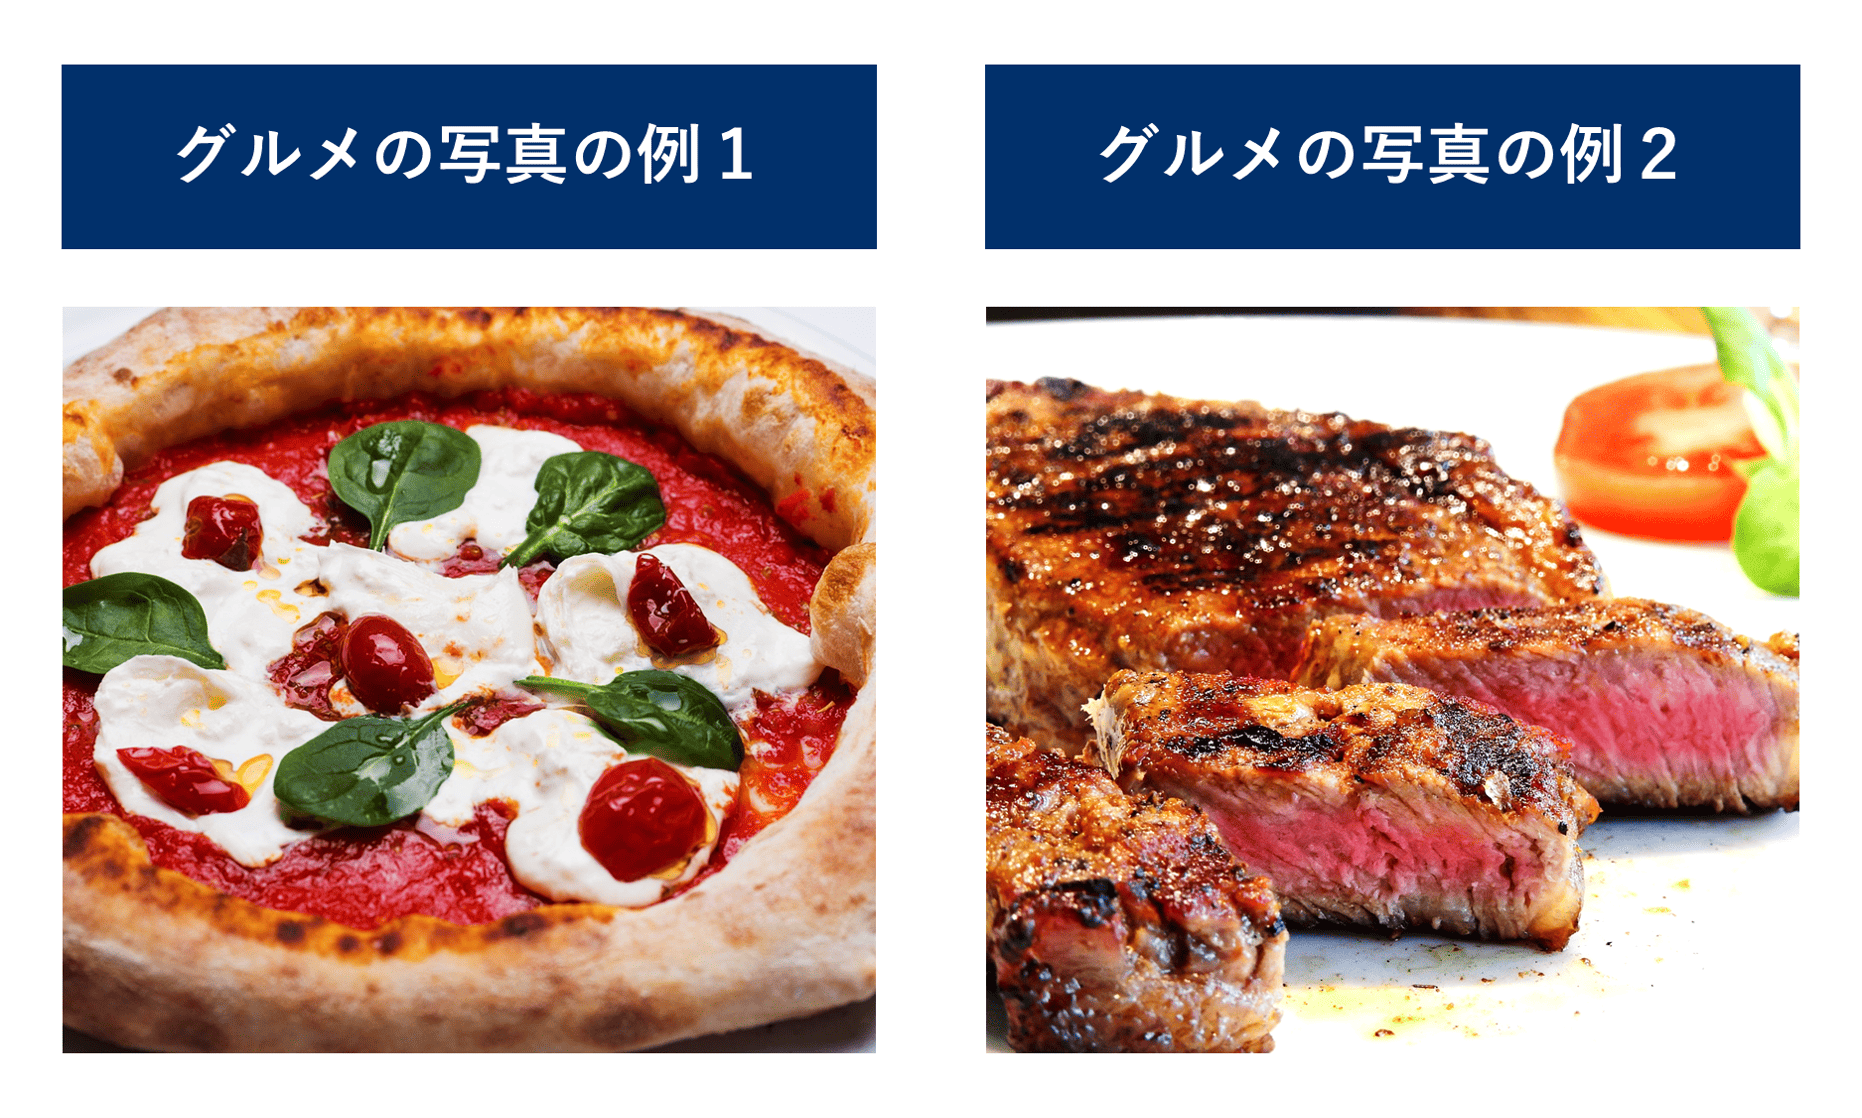 グルメの写真の二つの例（ピザとステーキ）